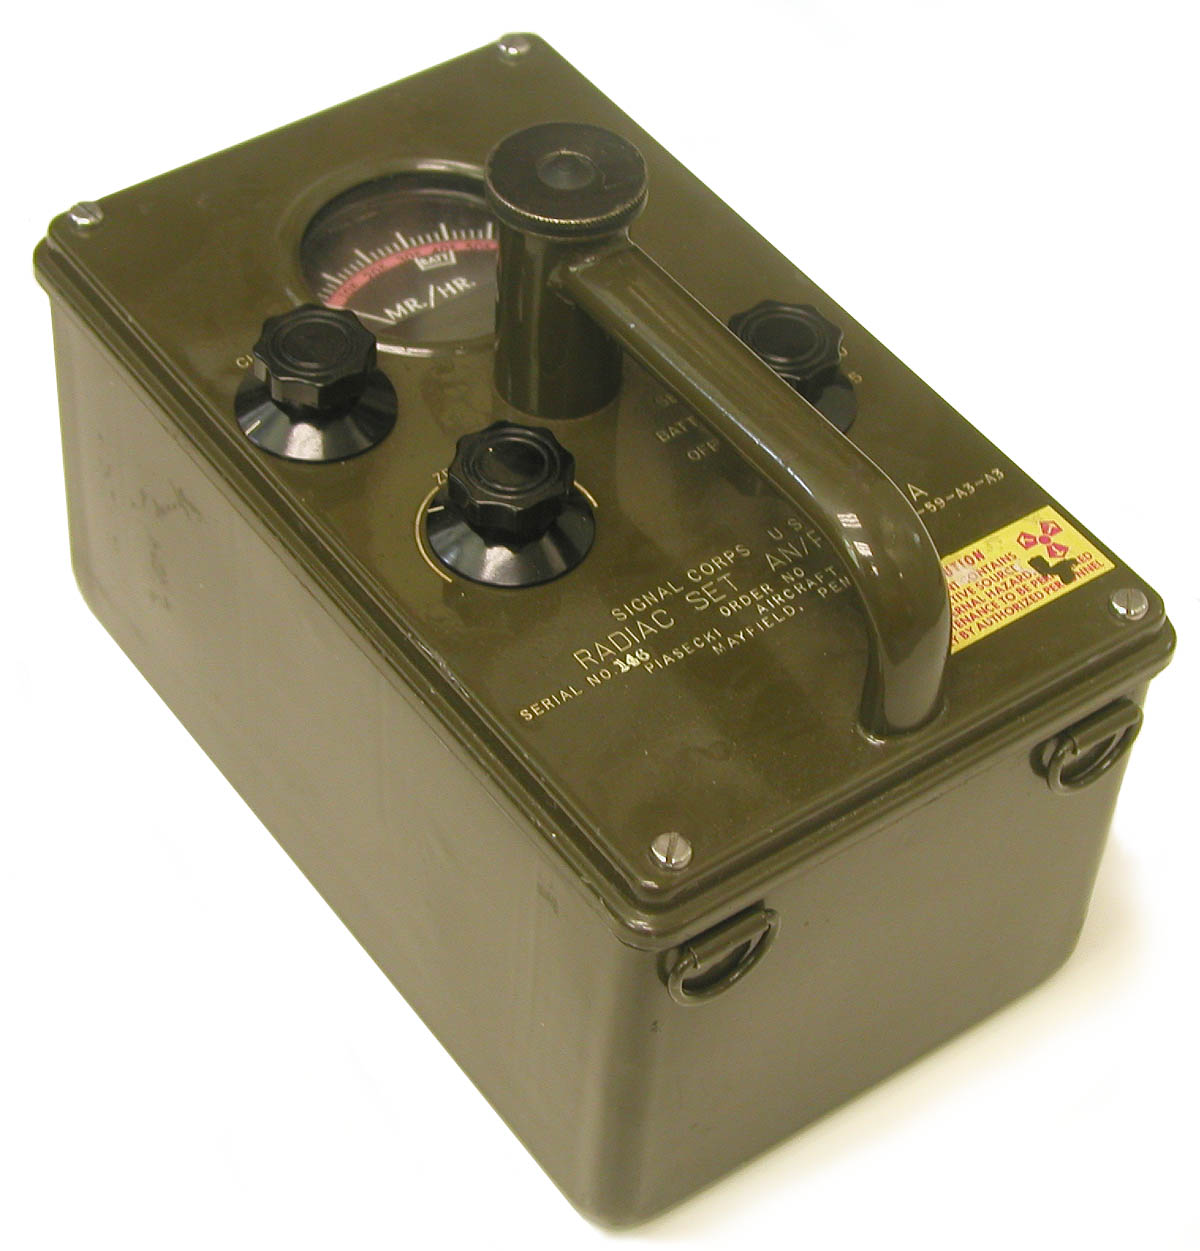 Model AN/PDR-39A Survey Meter